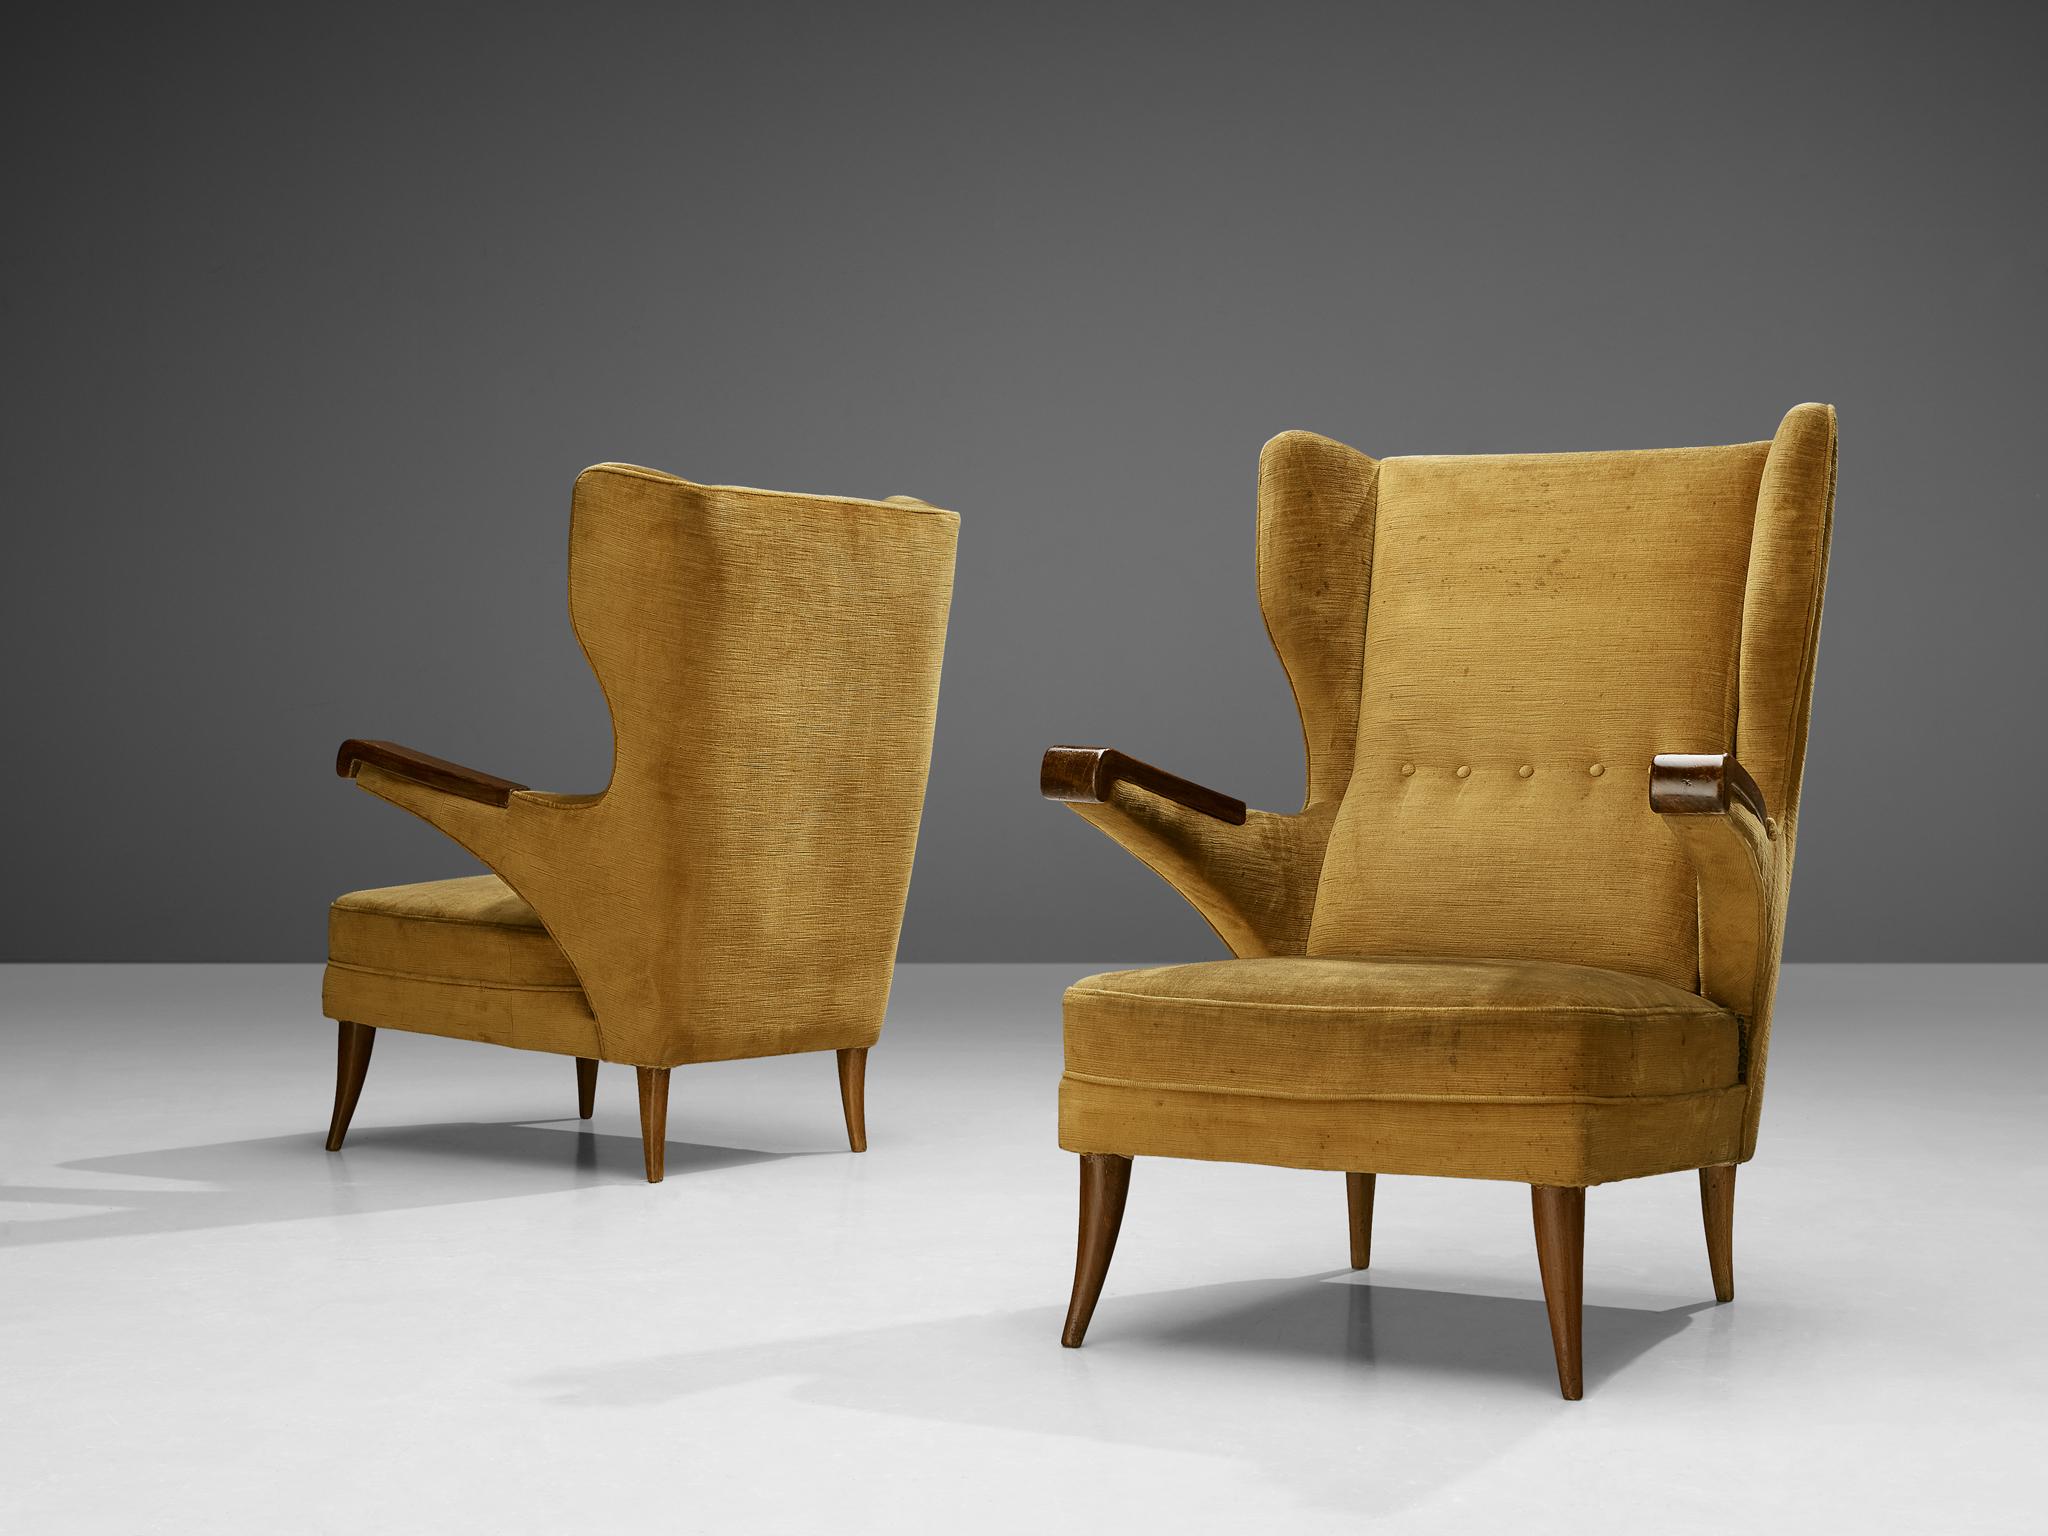 Paire de chaises longues, velours, hêtre teinté, Italie, années 1970 

La construction et l'utilité de cette paire de chaises longues sont bien pensées par le designer, ce qui donne cette forme sophistiquée. Par exemple, les accoudoirs ont été